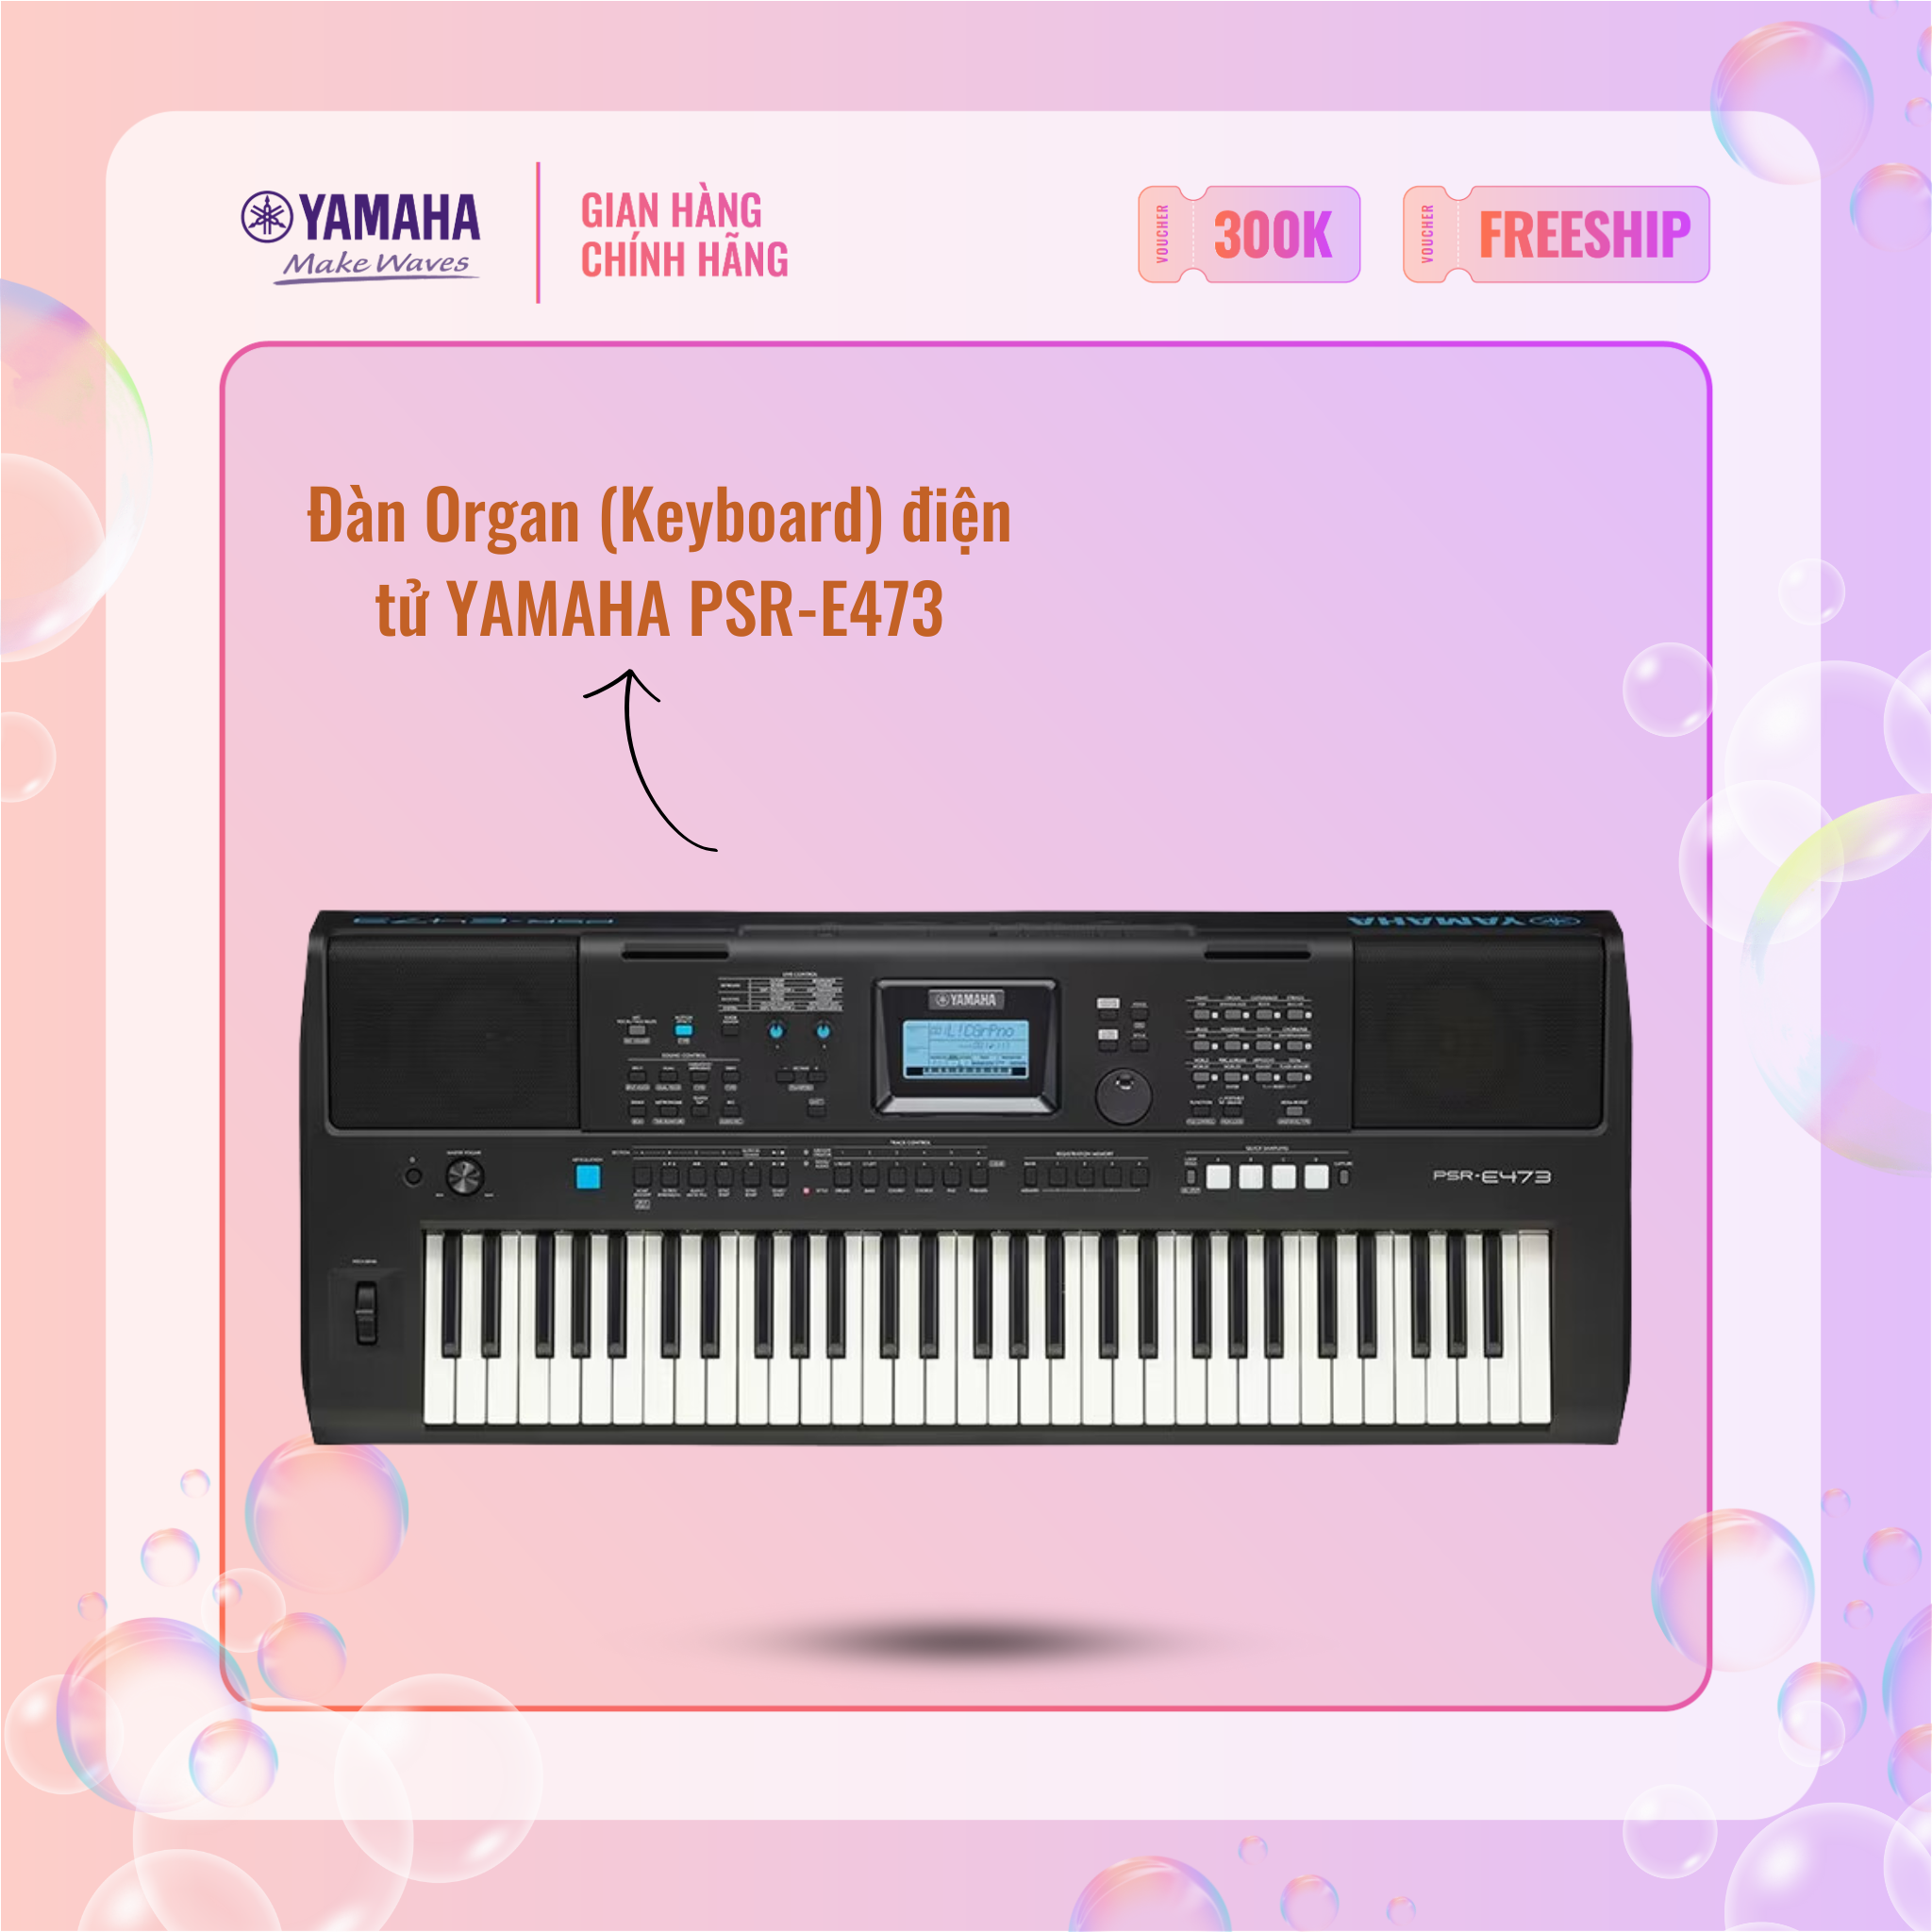 [Trả góp 0%] Đàn Organ (Keyboard) điện tử YAMAHA PSR-E473 - Phù hợp cho người mới tập chơi đàn lẫn nhạc công có kinh nghiệm bảo hành chính hãng 12 tháng